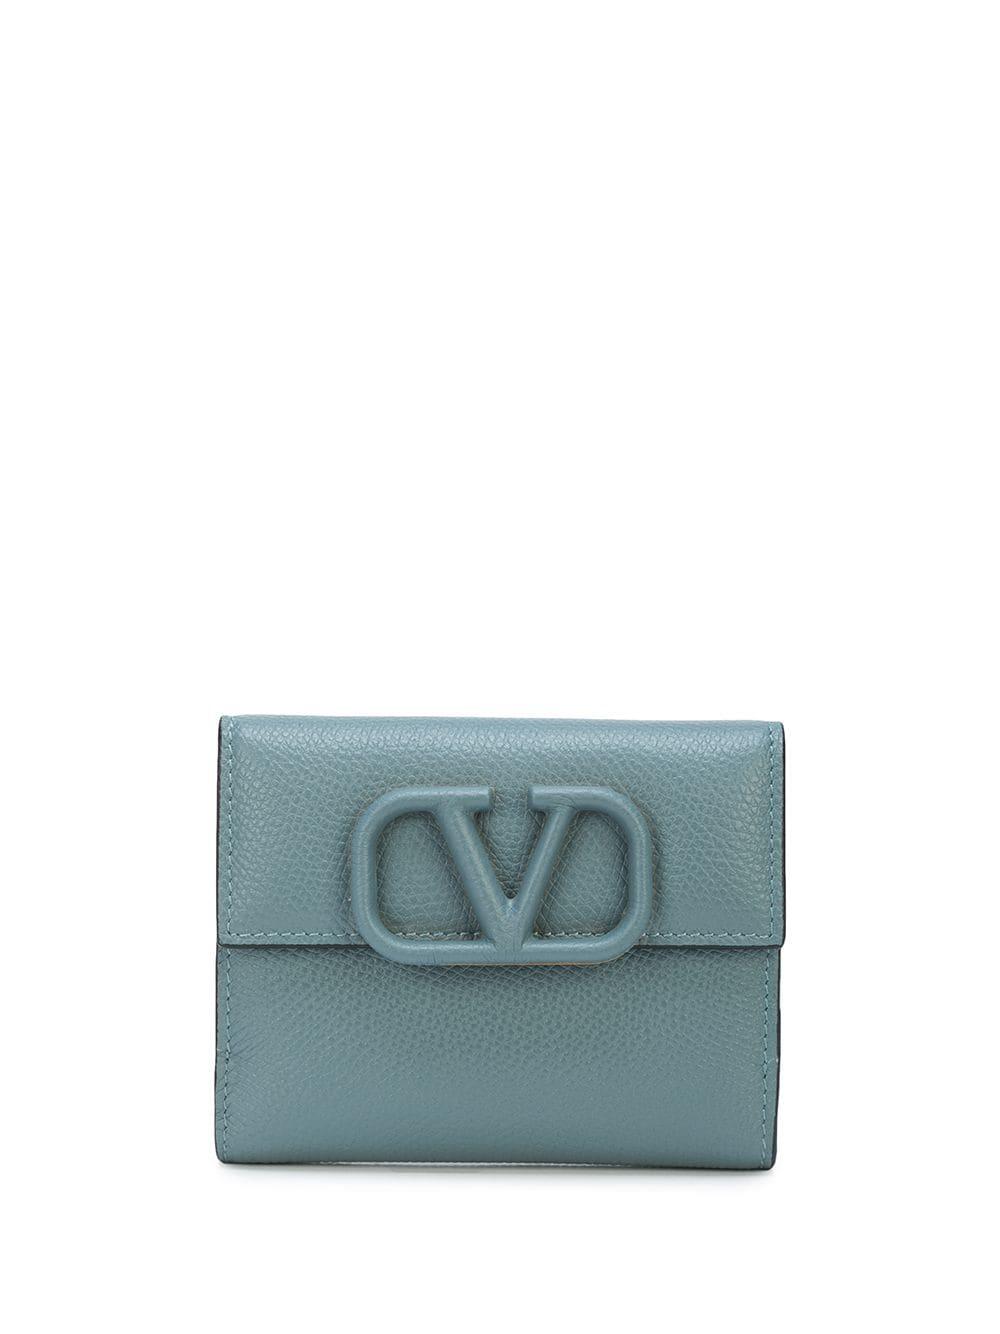 Valentino Garavani Calf Leather Vlogo Detail Wallet in Blue - Lyst